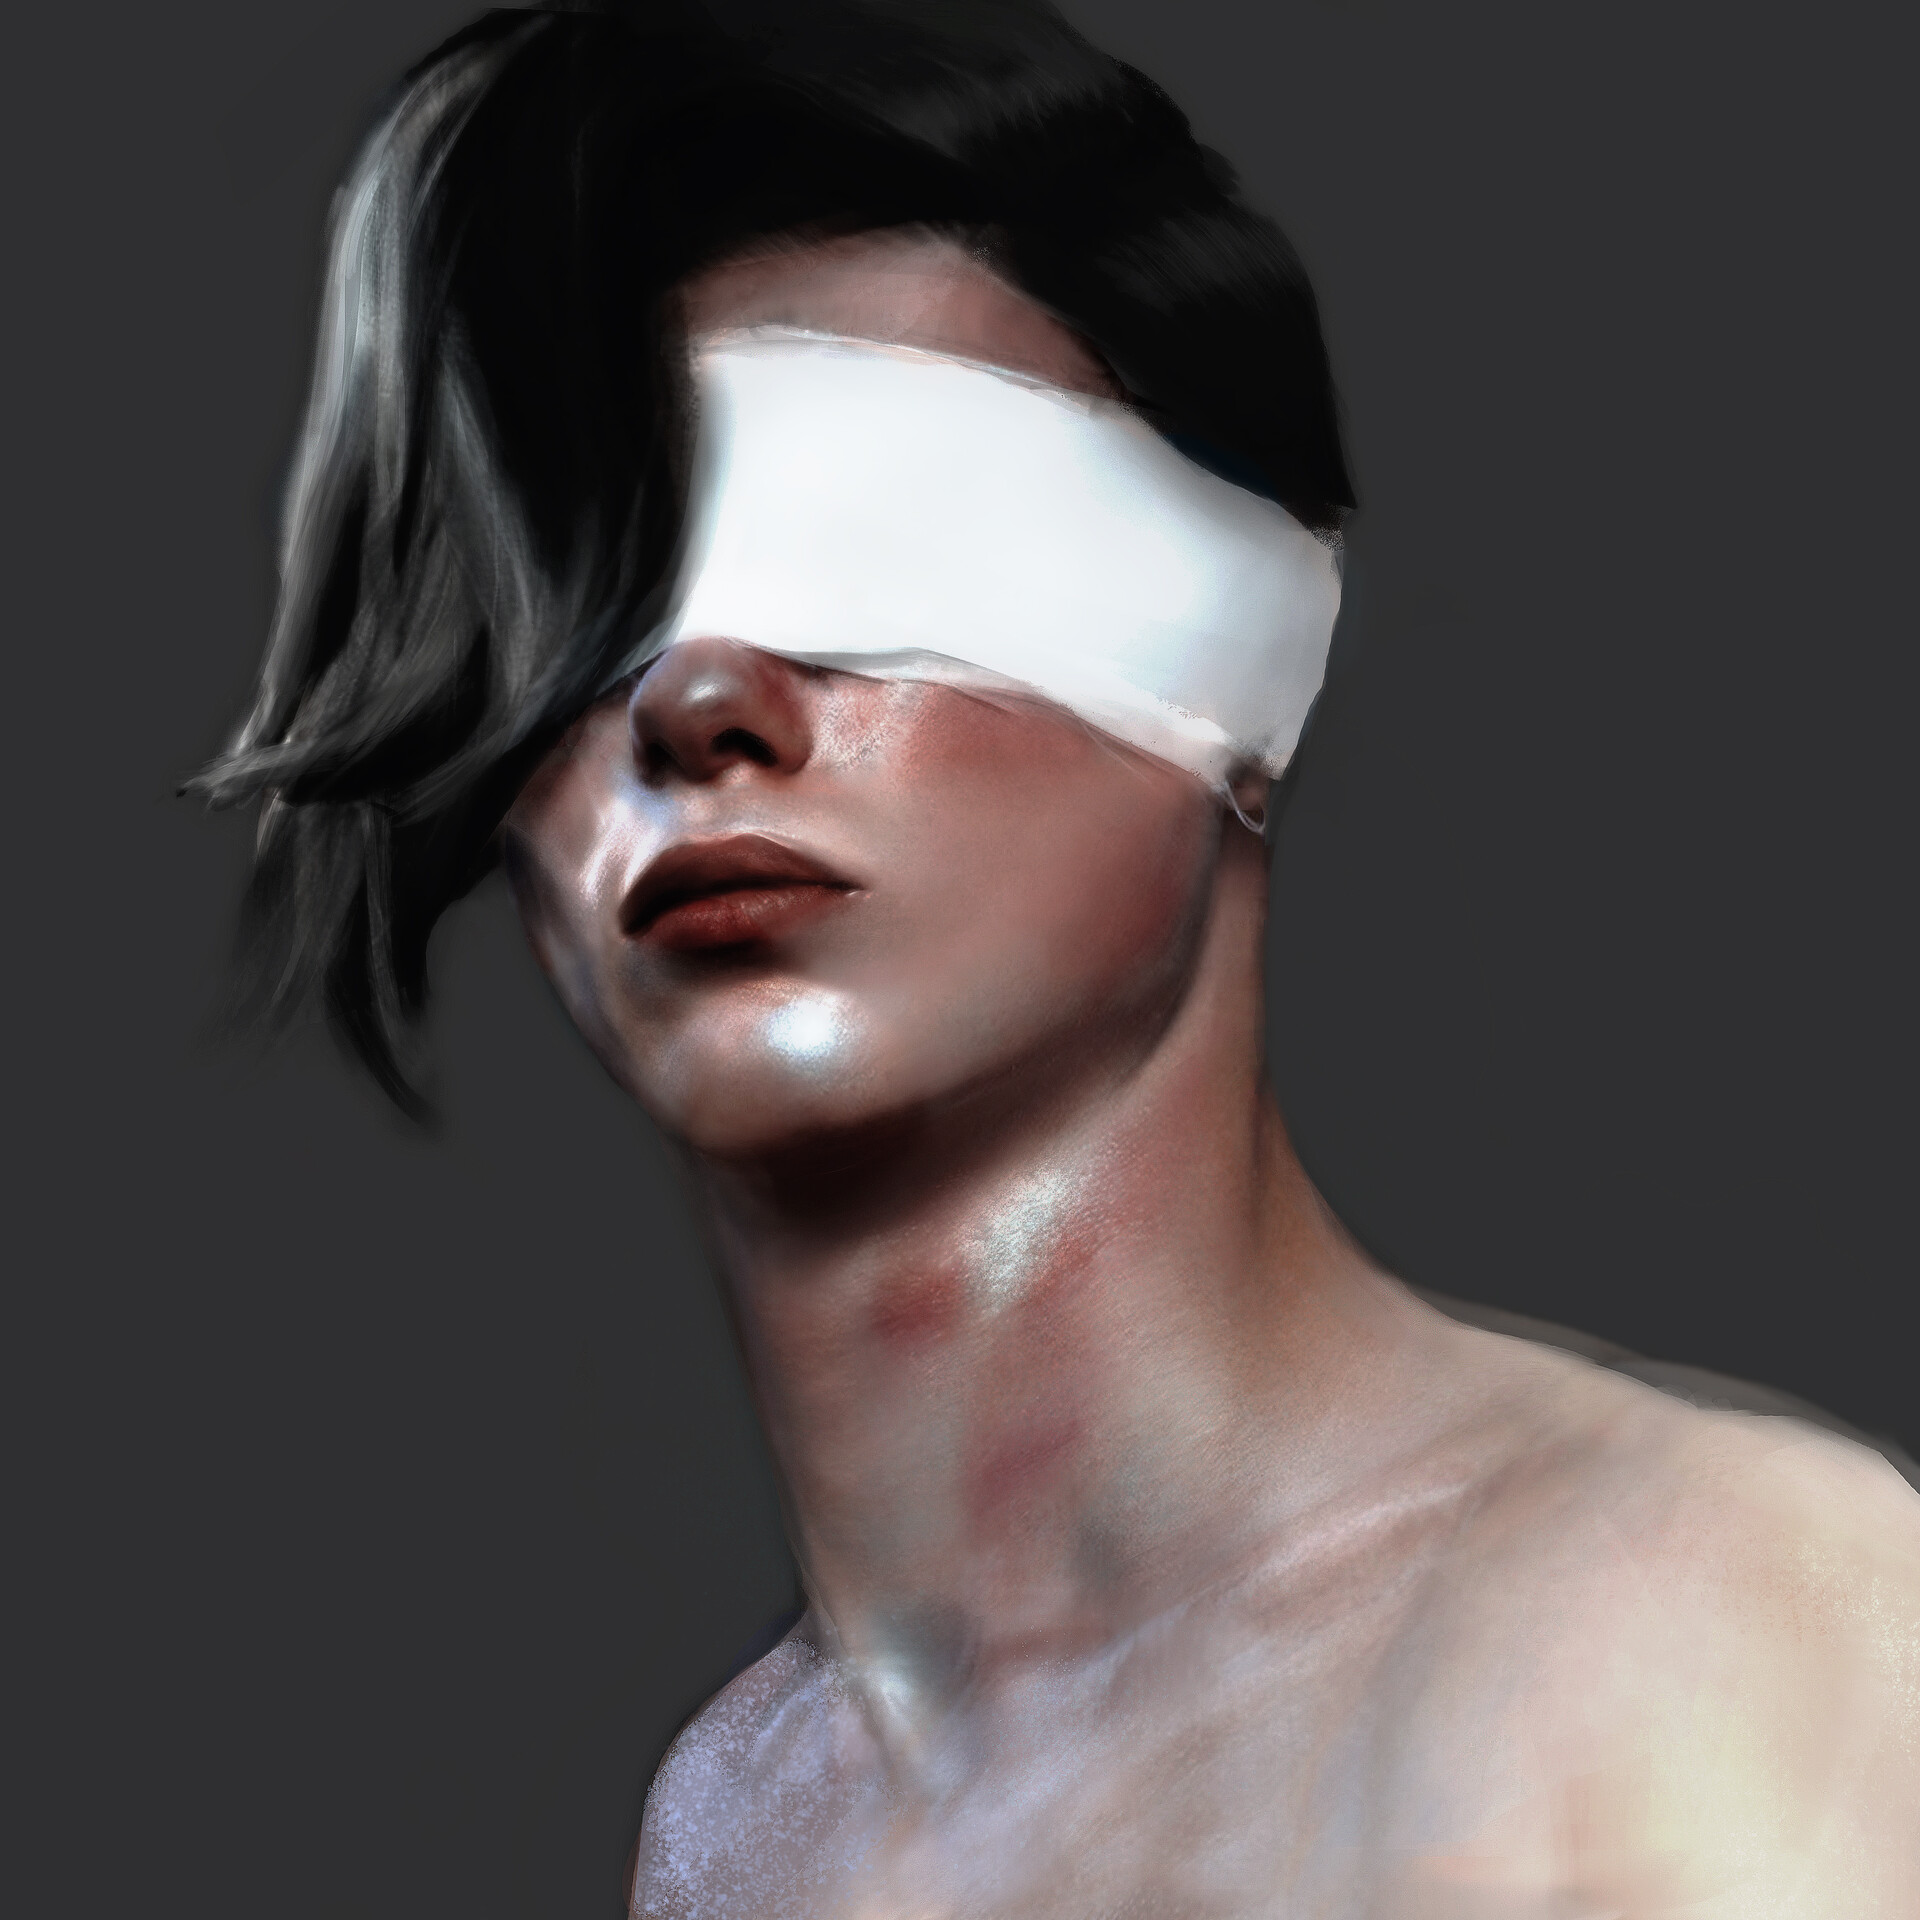 ArtStation - Blindfolded Man